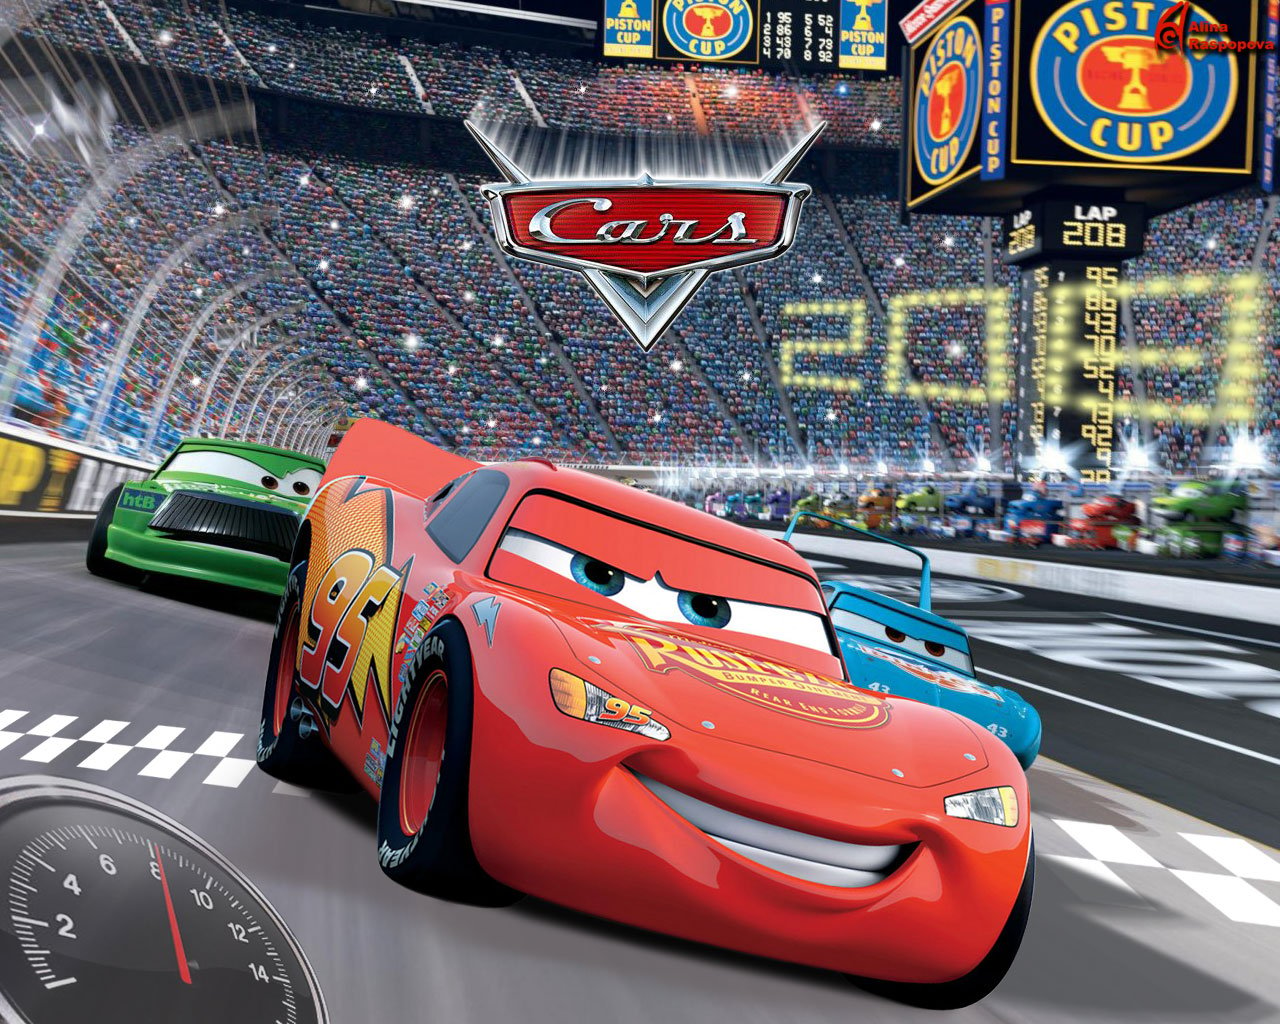 50+] Disney Cars Movie Wallpaper - WallpaperSafari